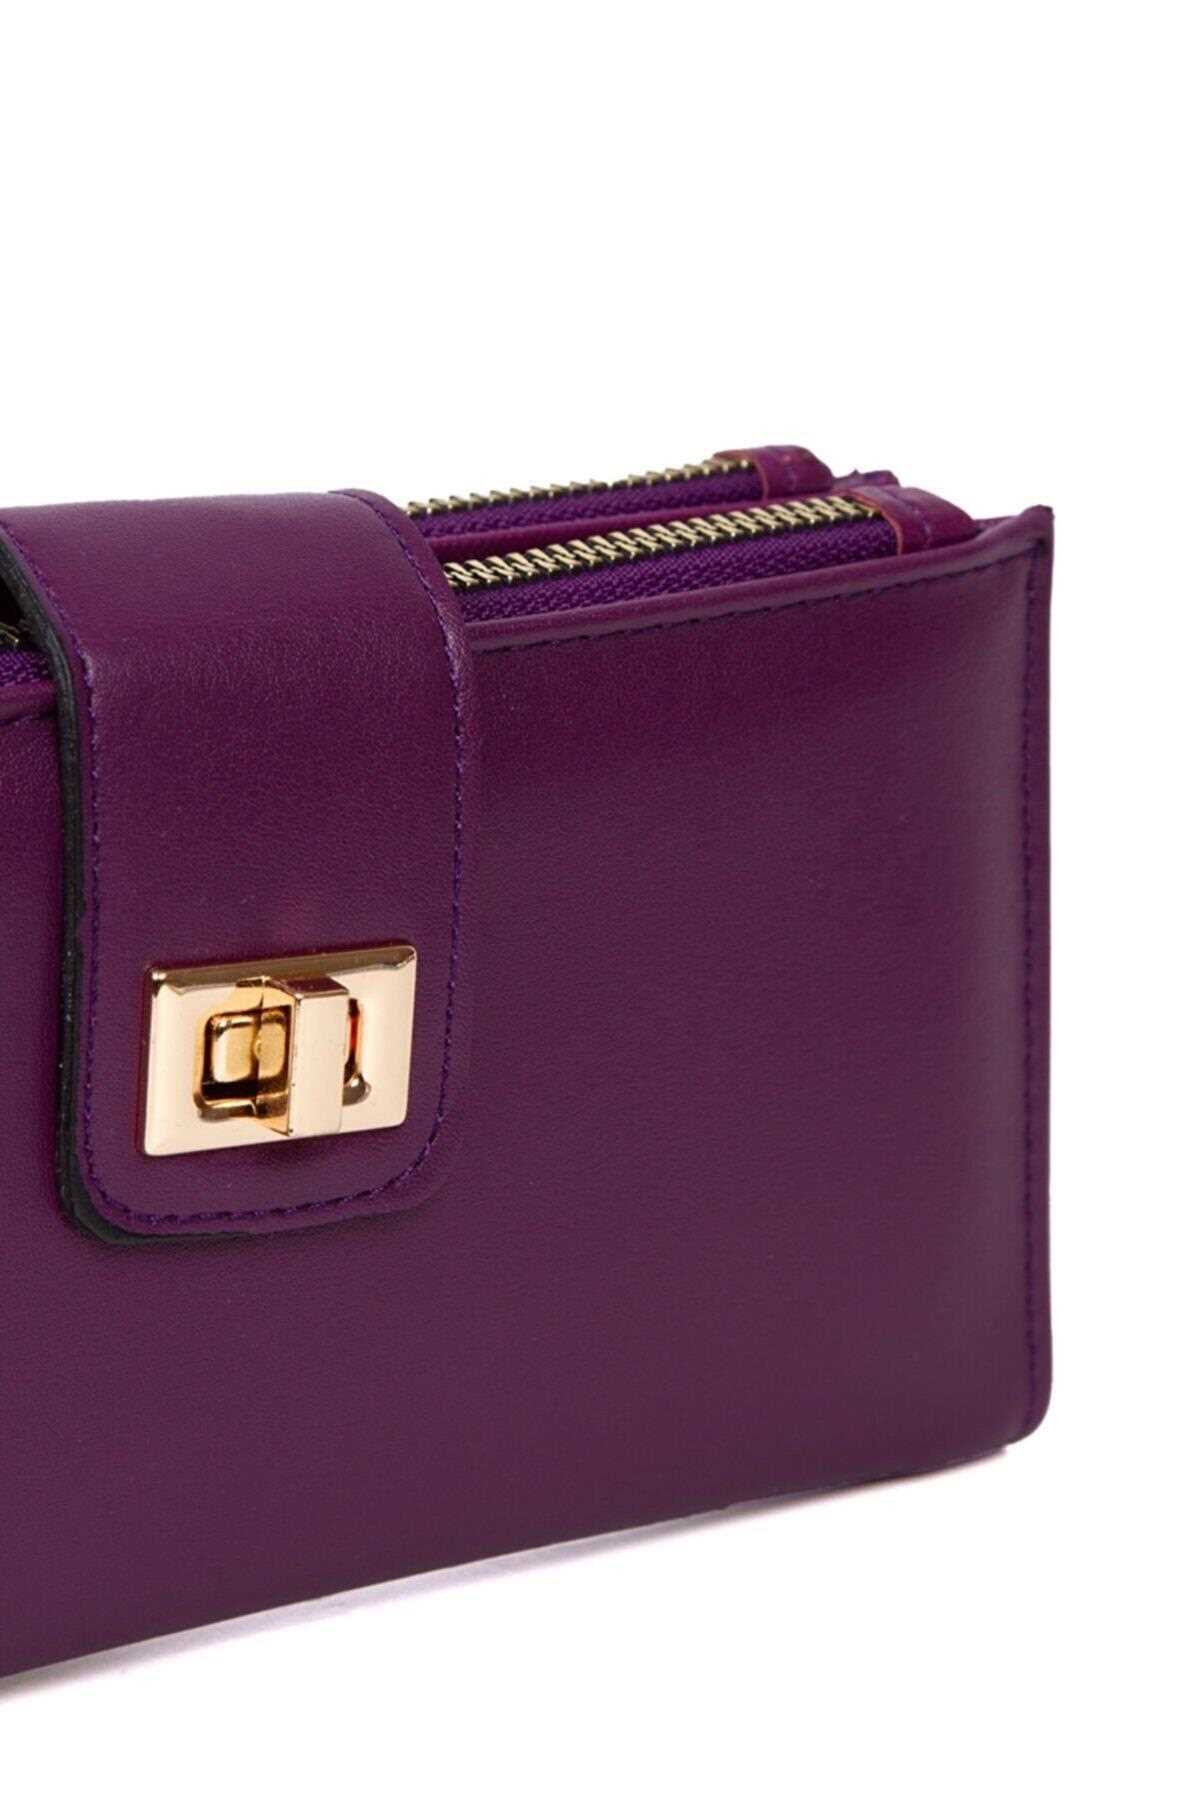 کیف پول زنانه زیبا دار شیک HATASAN رنگ بنفش کد ty197904044